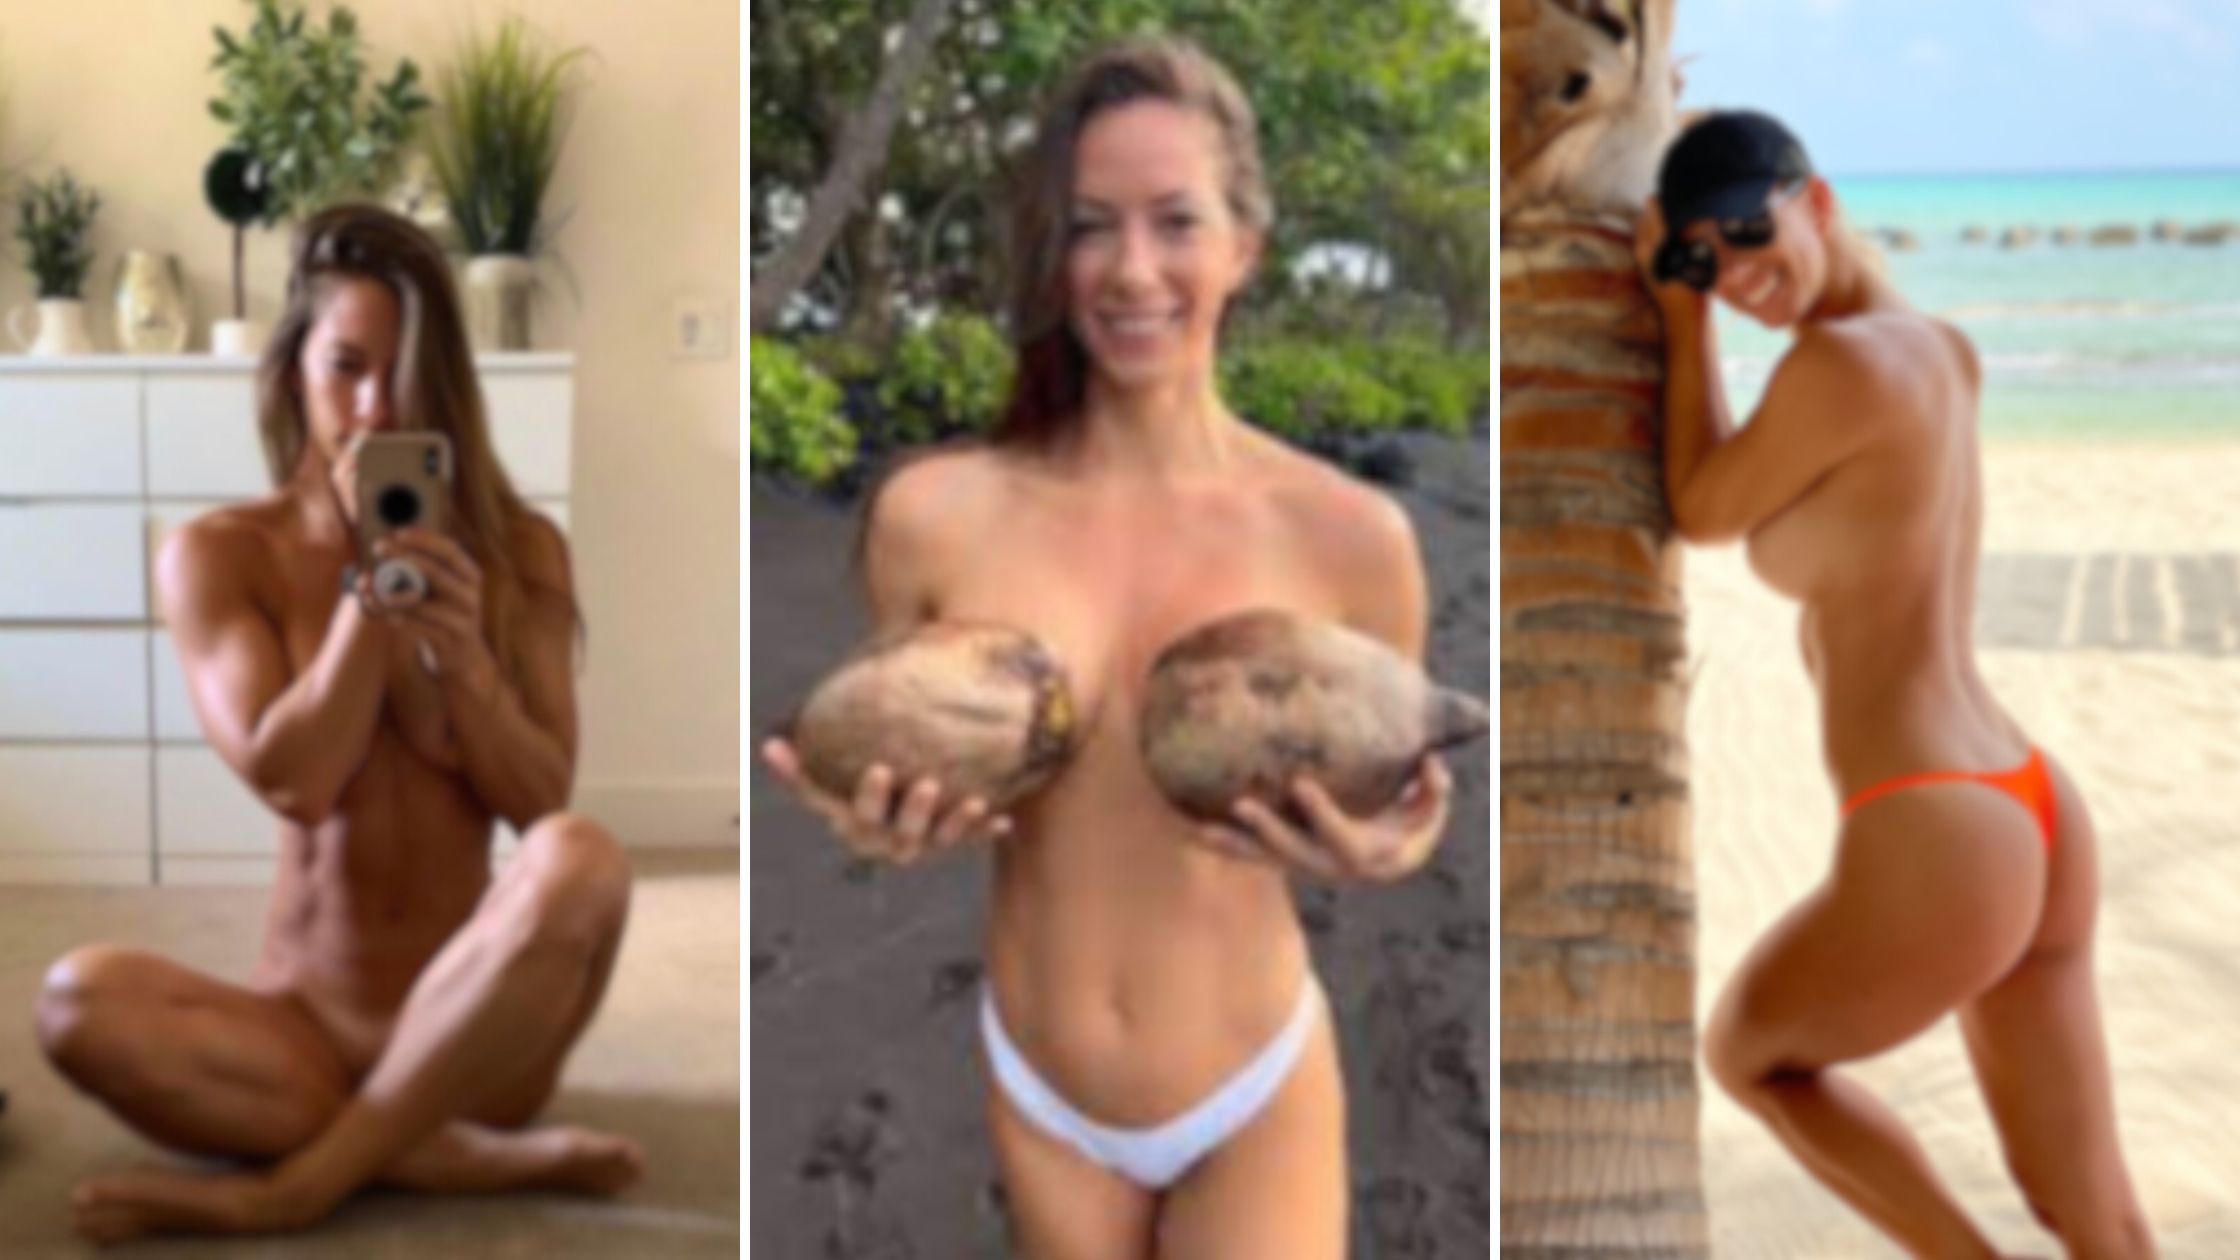 janna breslin nude photos leaked